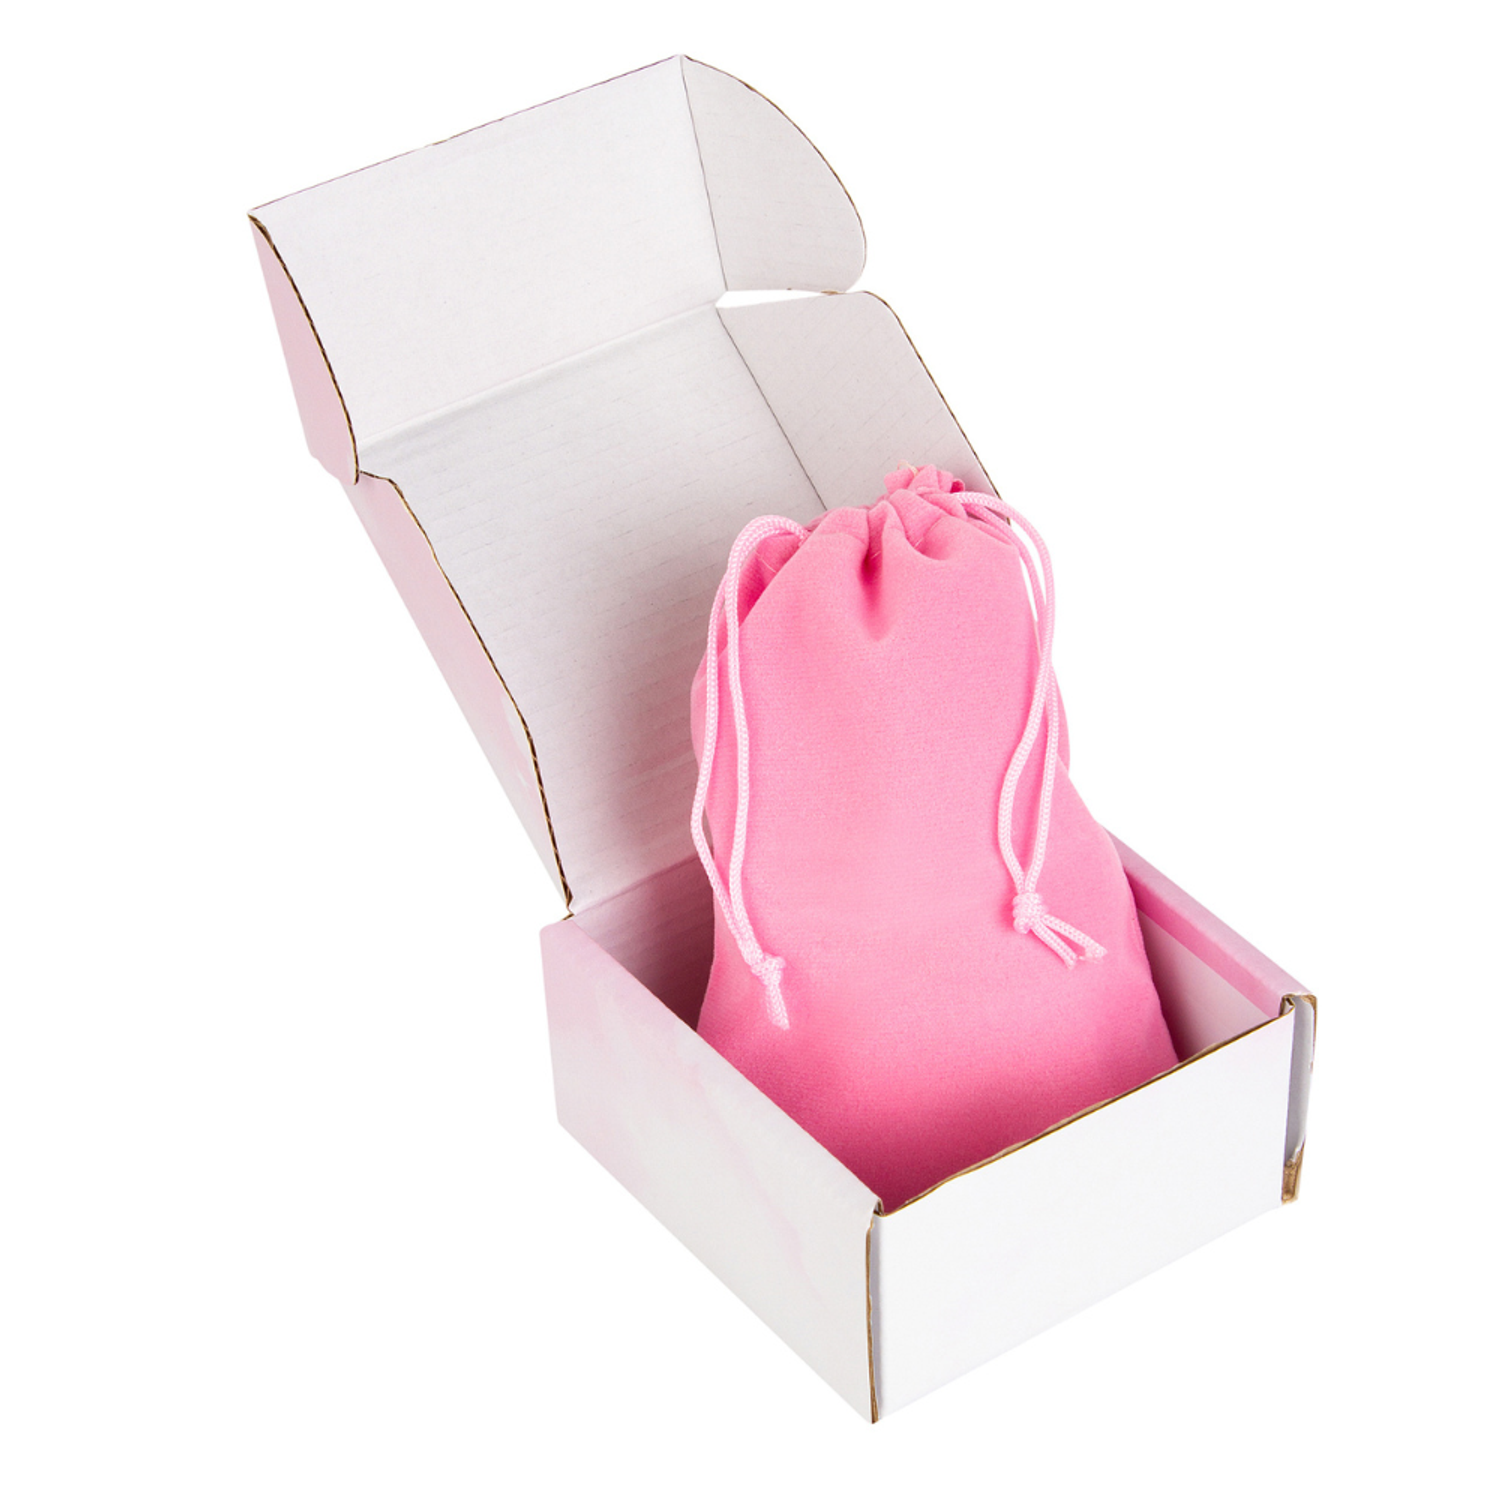 Наборы для создания украшений NRAVIZA Детям браслеты розовые - фото 18